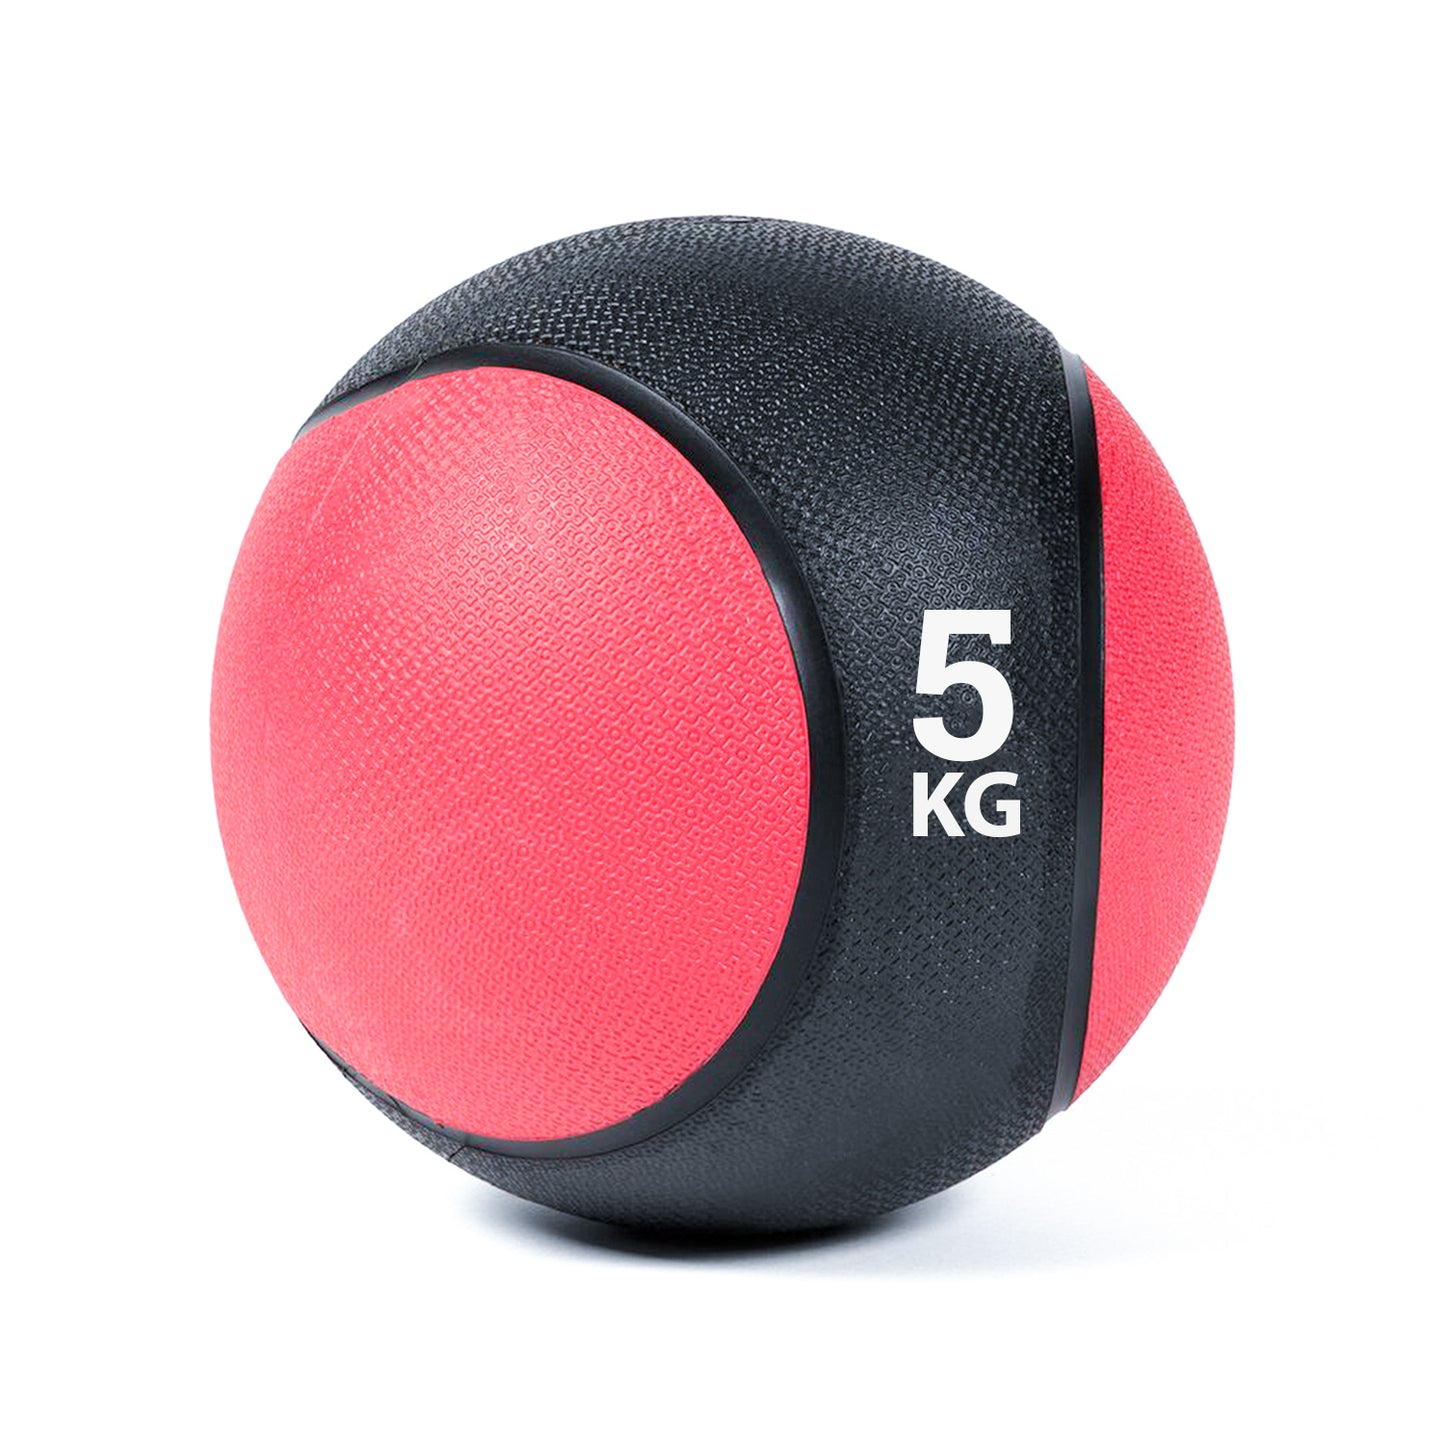 كرة طبية من المطاط لاعادة التأهيل و اللياقة البدنية - لون اسود و احمر - وزن 5 كيلو جرام